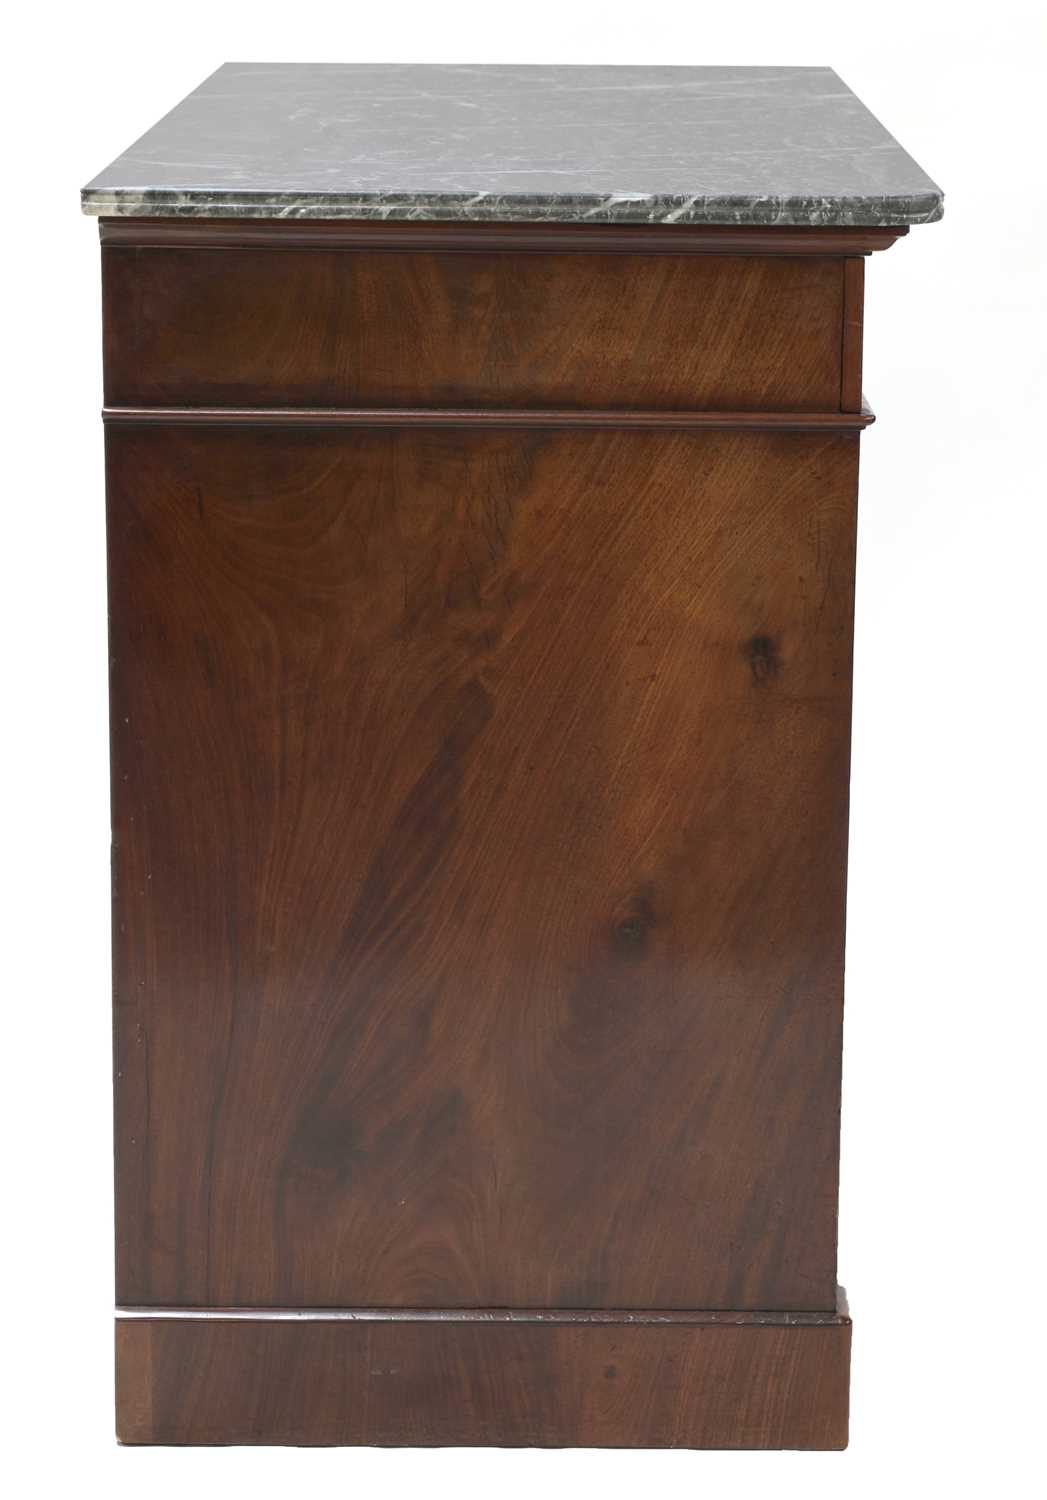 A Biedermeier mahogany commode - Image 2 of 6